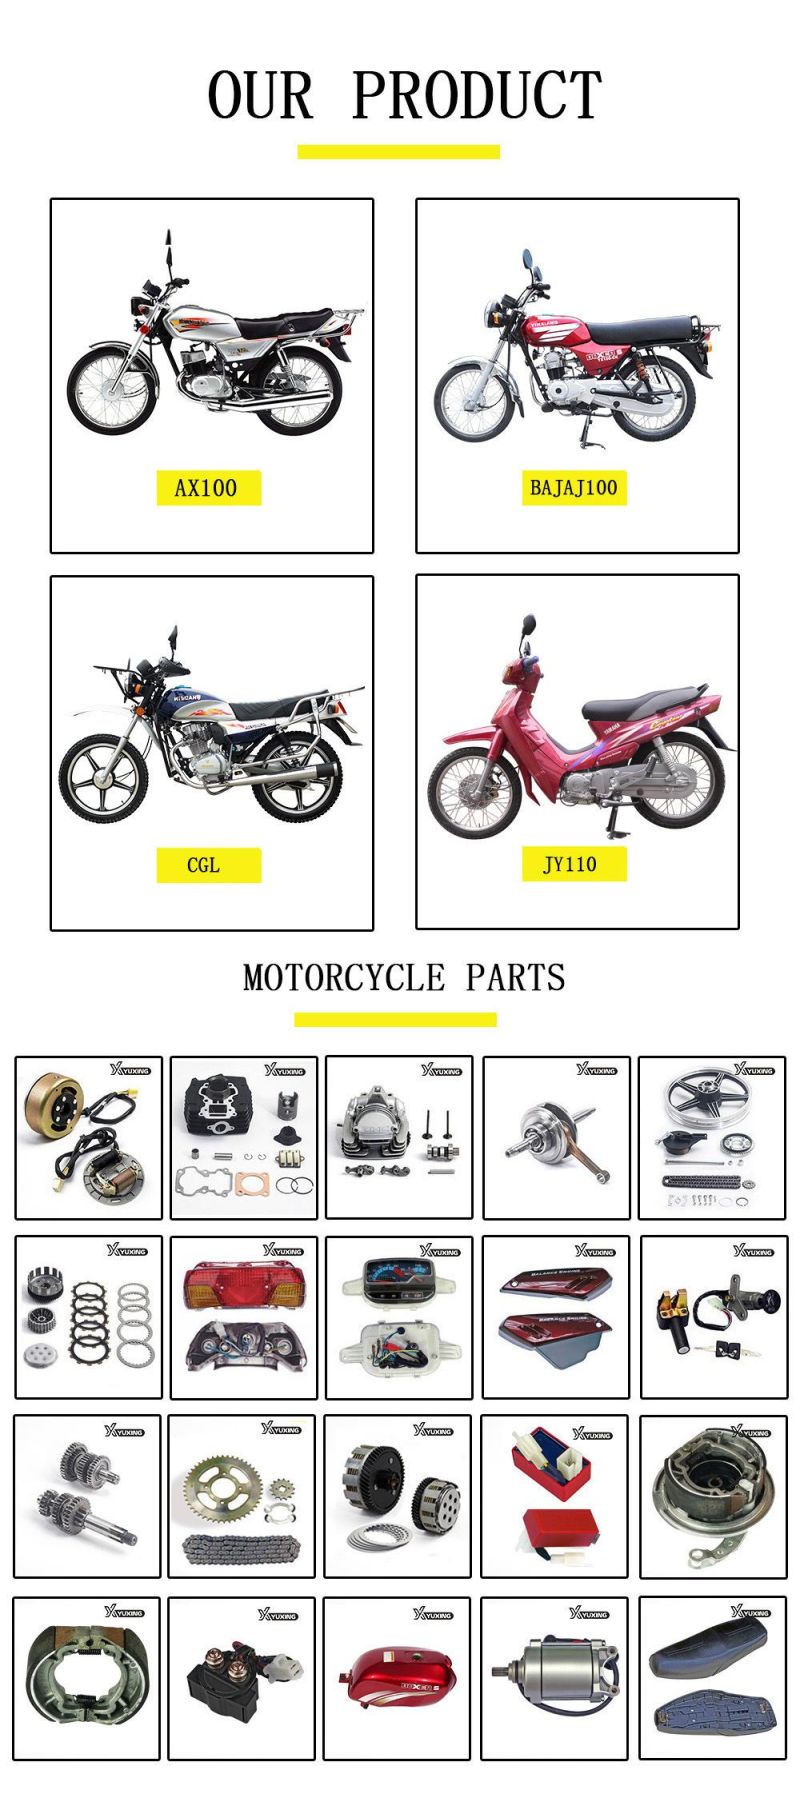 Bajaj100 Motorcycle Parts Motorcycle Speedometer